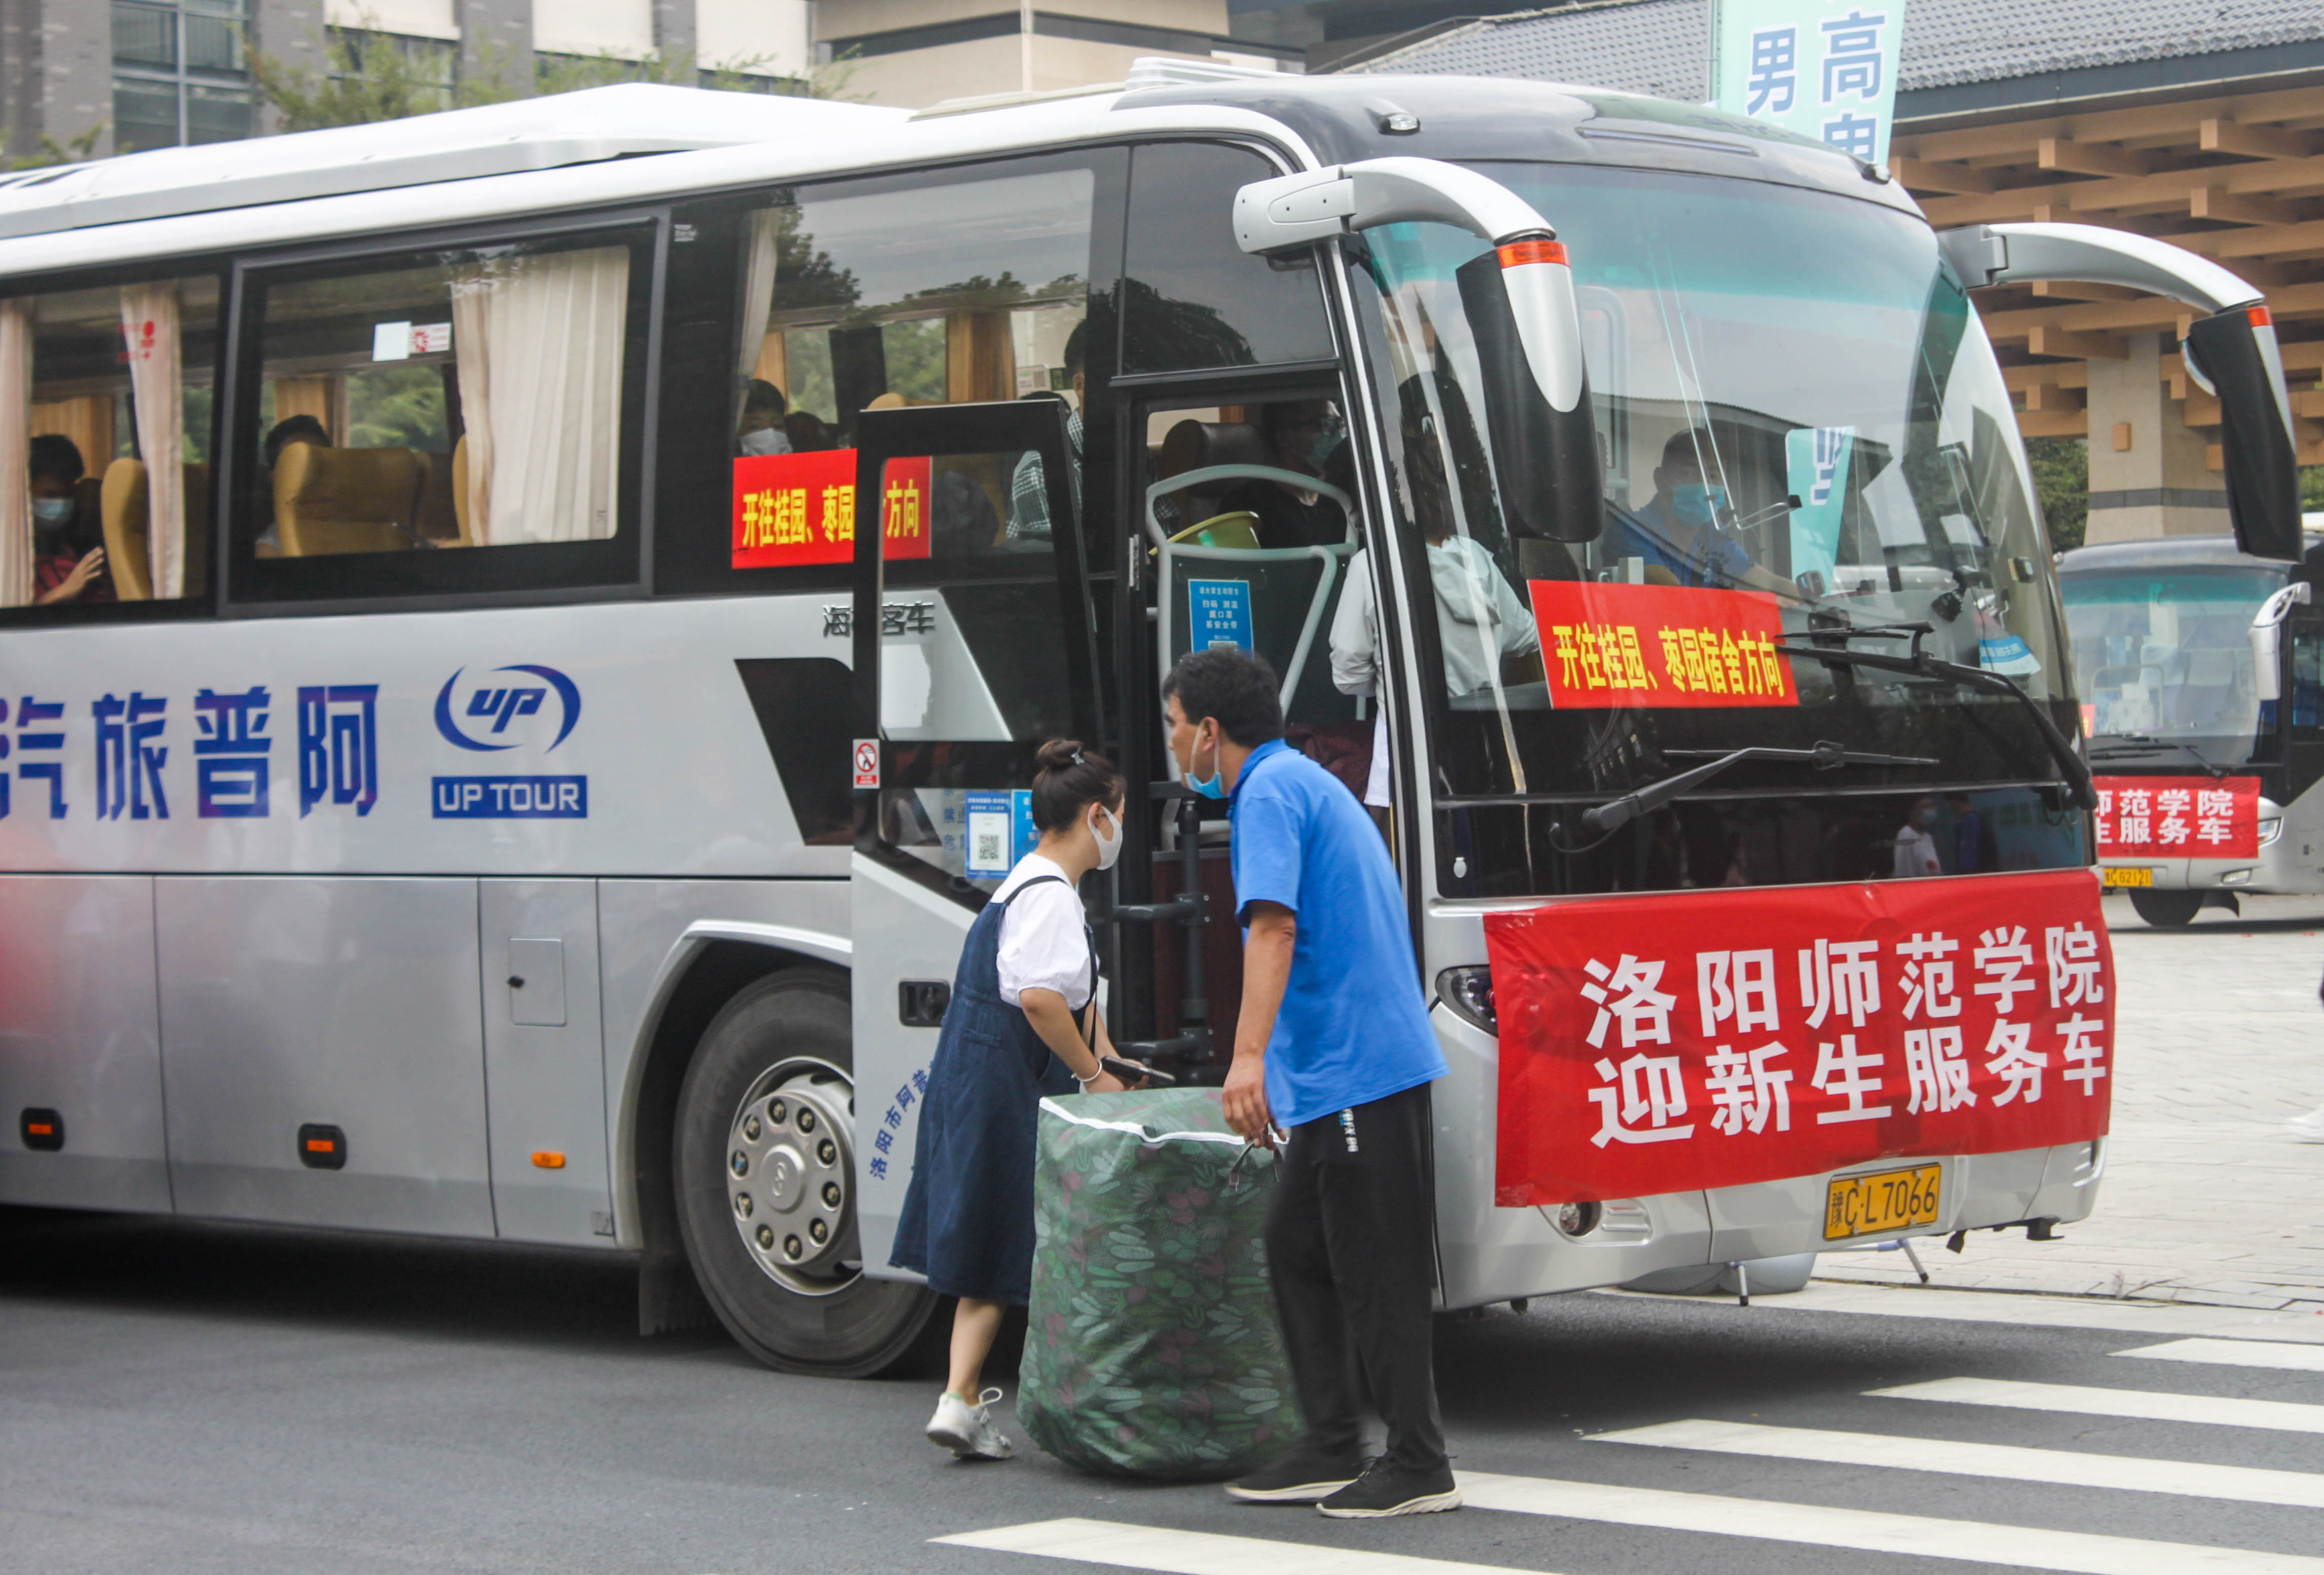 8学校安排大巴车免费为新生运送行李  谭璐摄.jpg